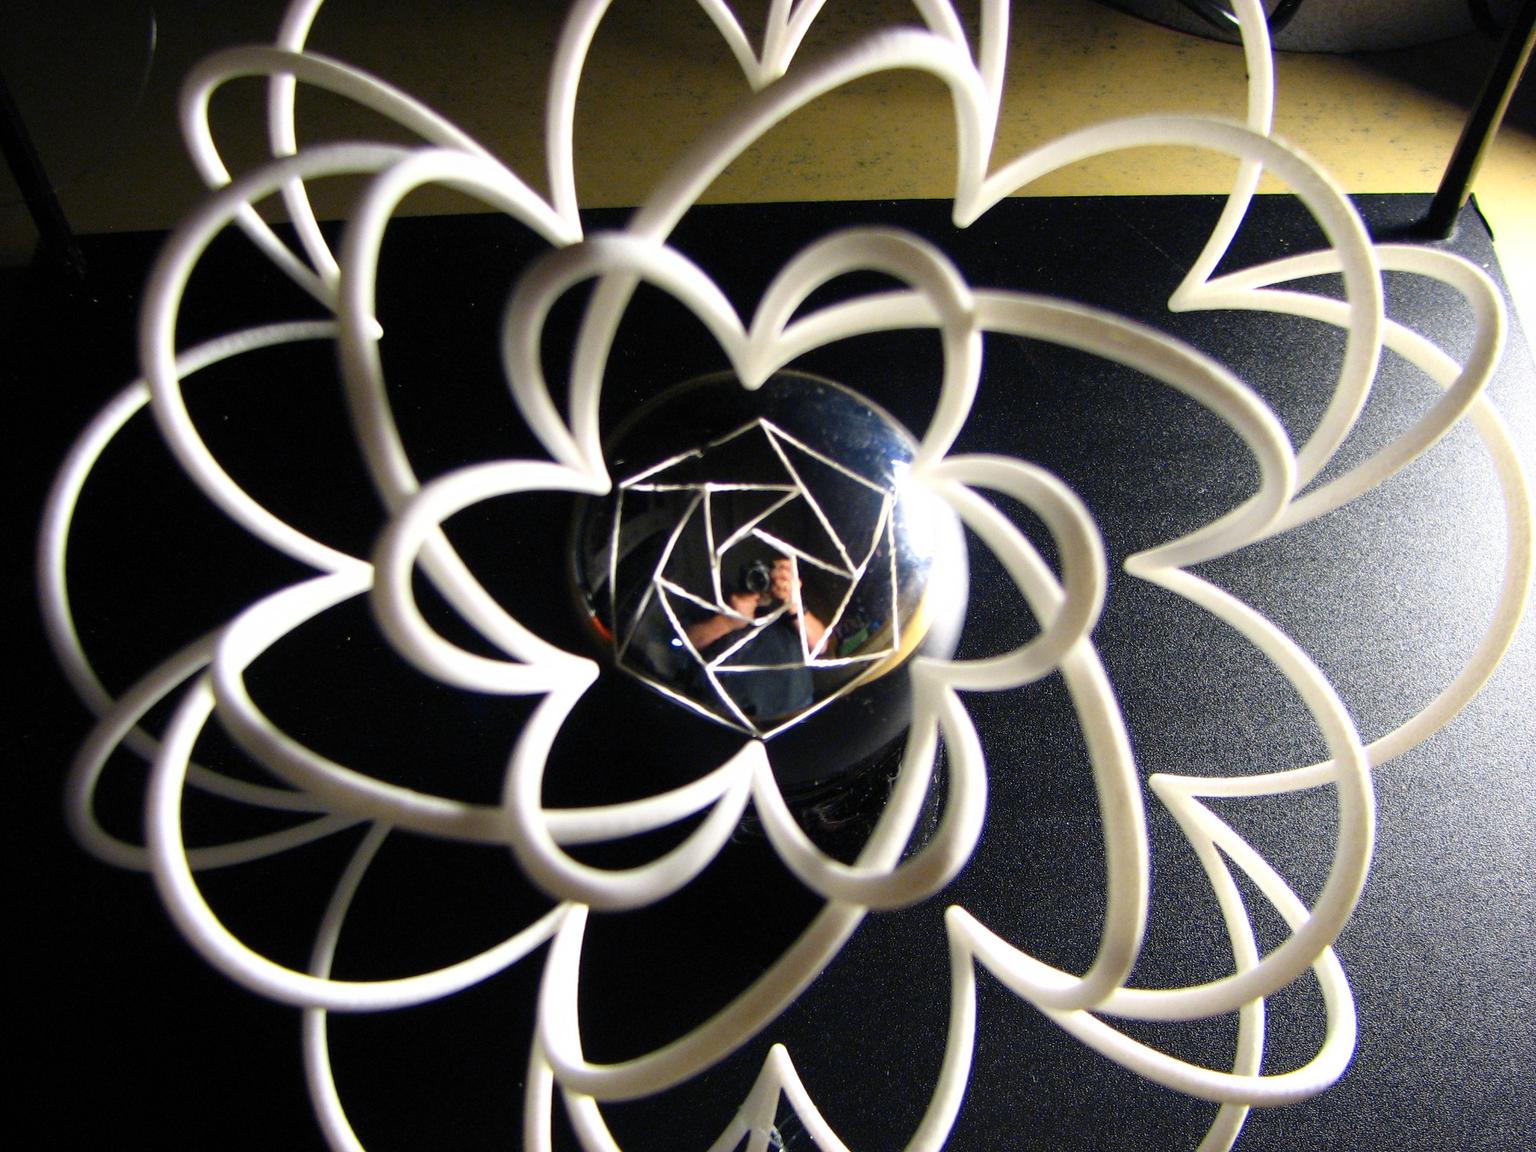 Image for entry 'Hexagonal Flower'